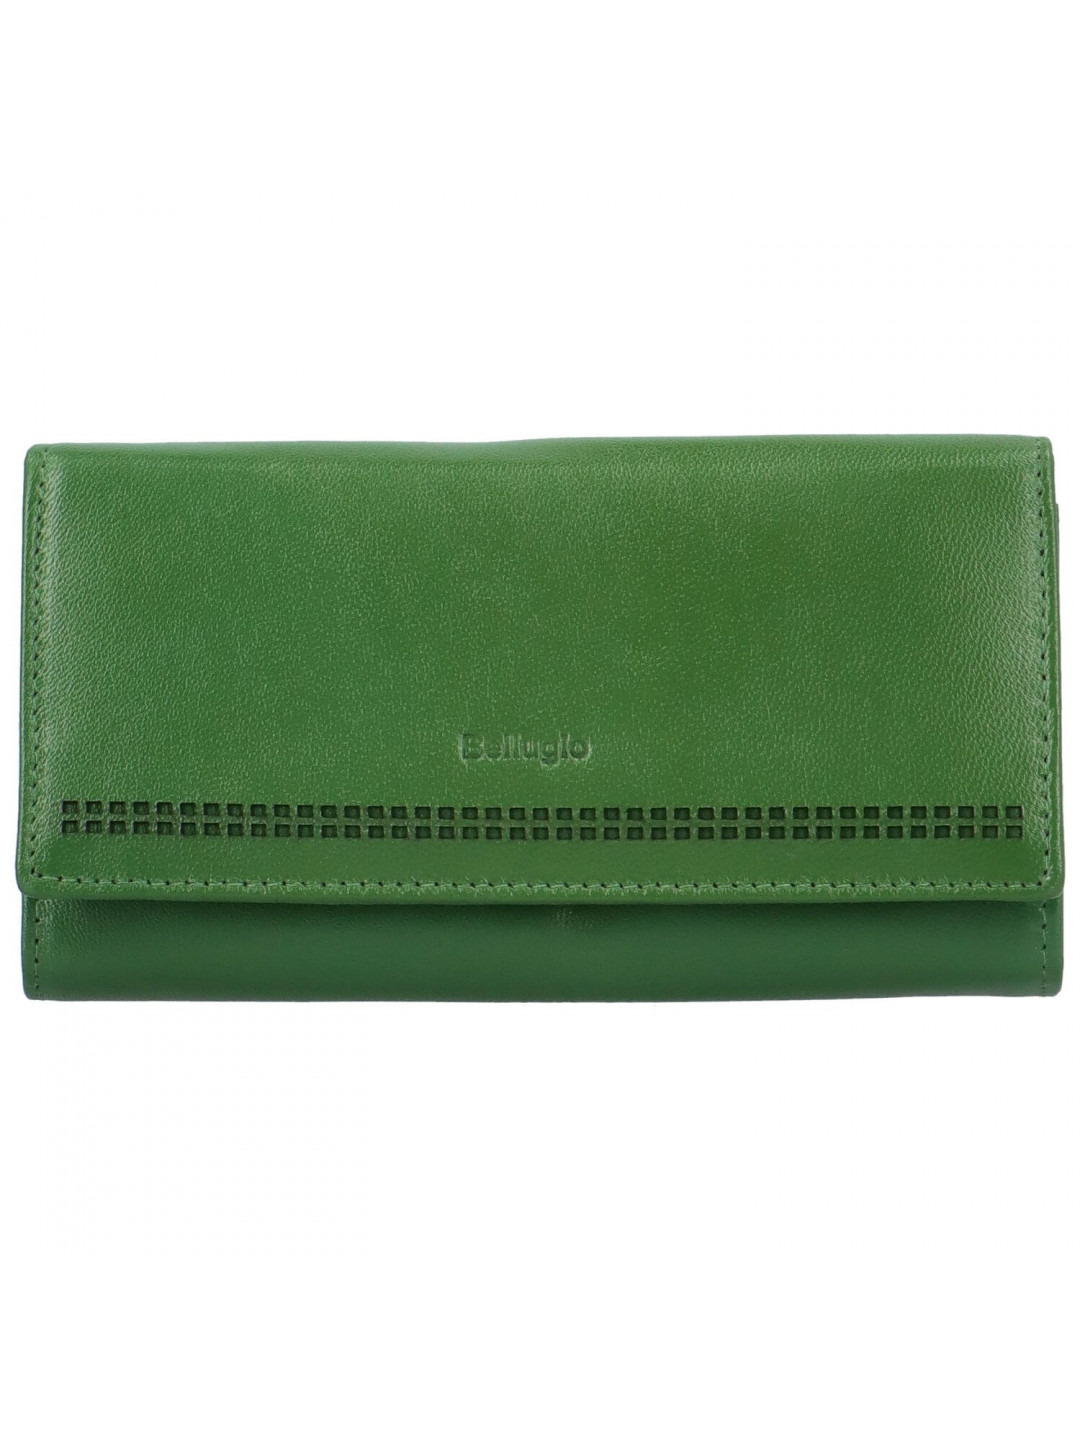 Dámská kožená peněženka zelená – Bellugio Brenda